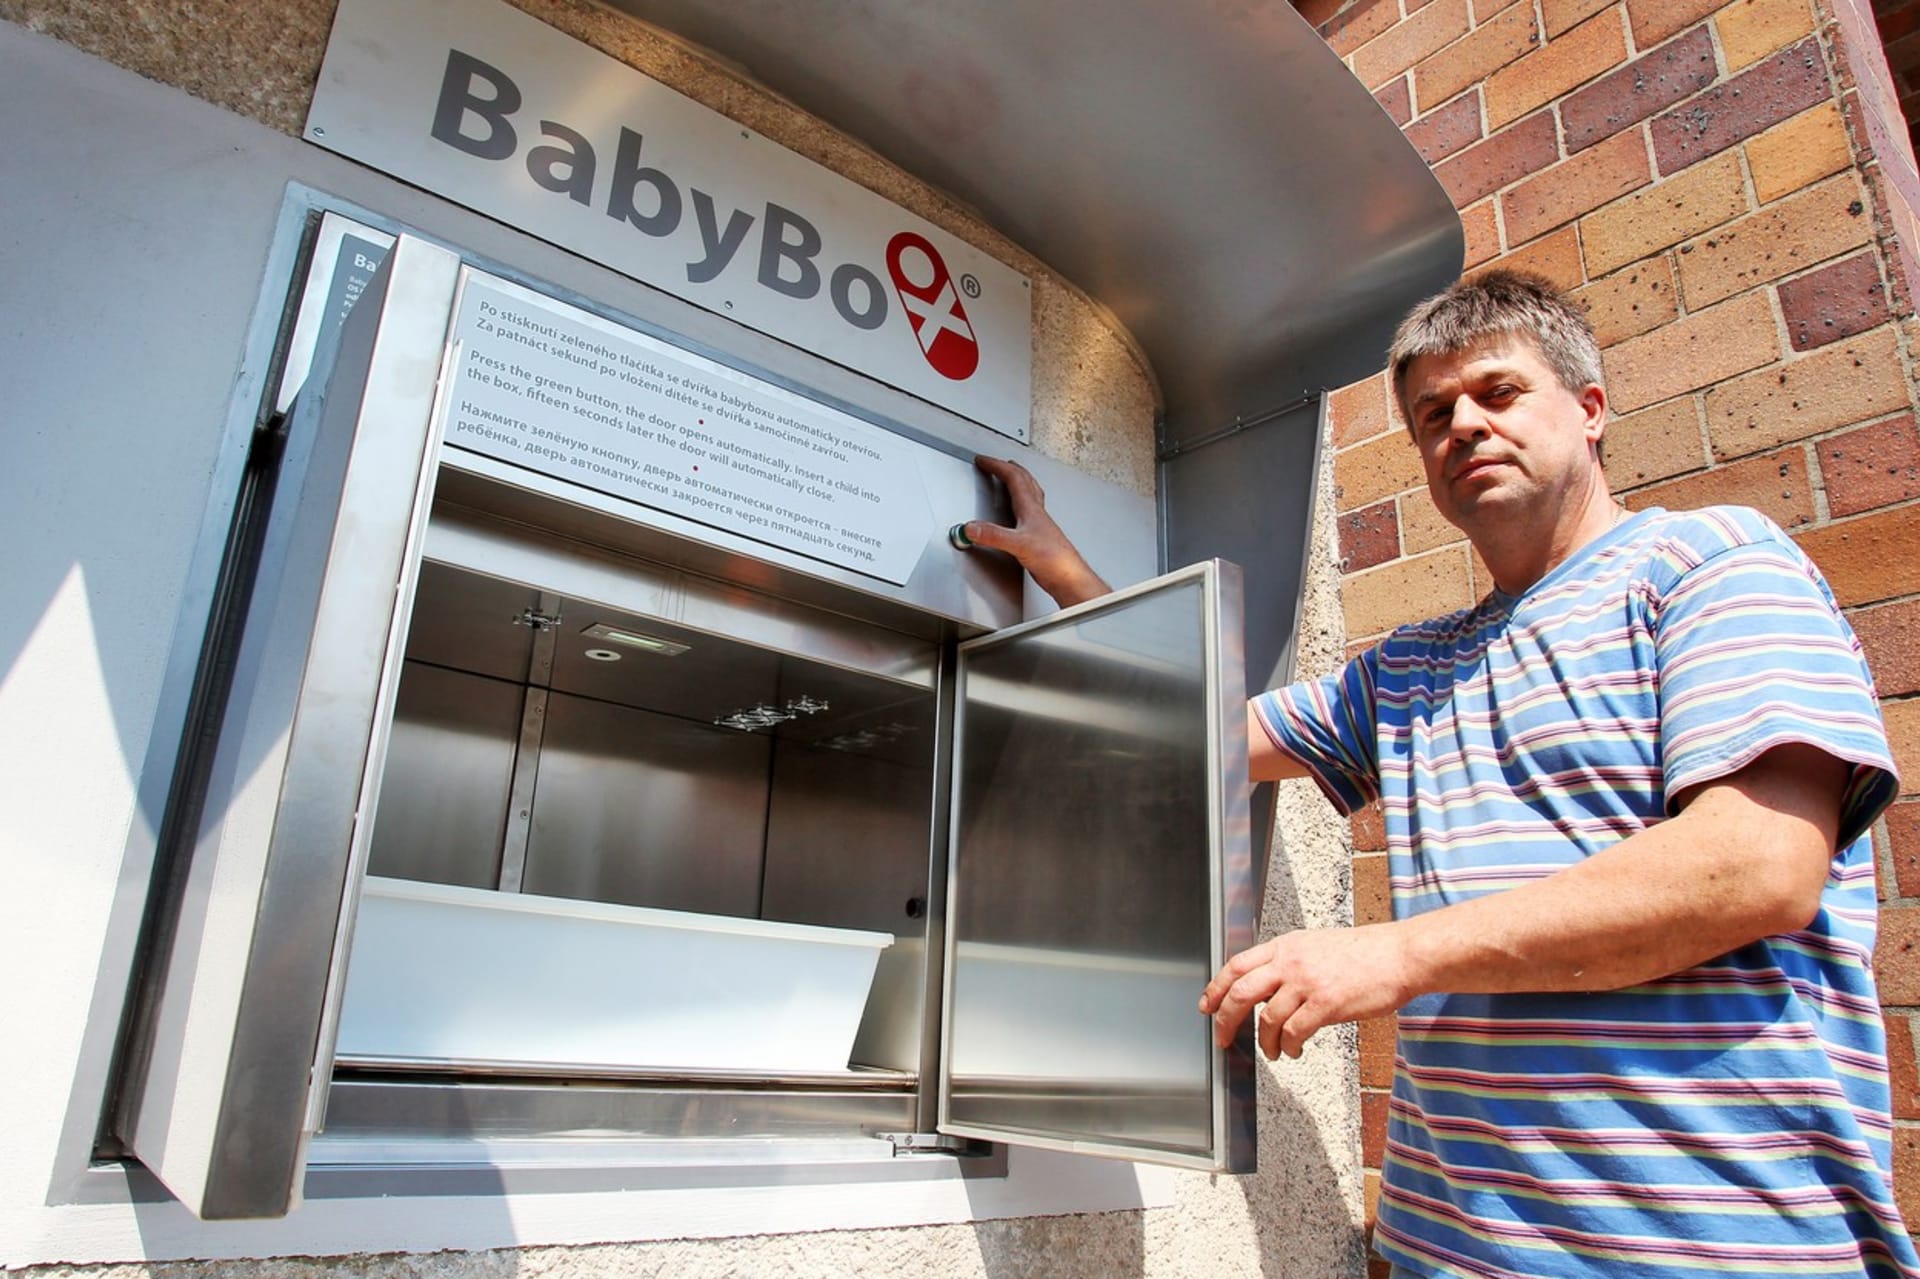 Výrobce babyboxu nové generace, který nahradil vysloužilý model, Zdeněk Juřica při jeho instalaci v Sokolově v roce 2015.